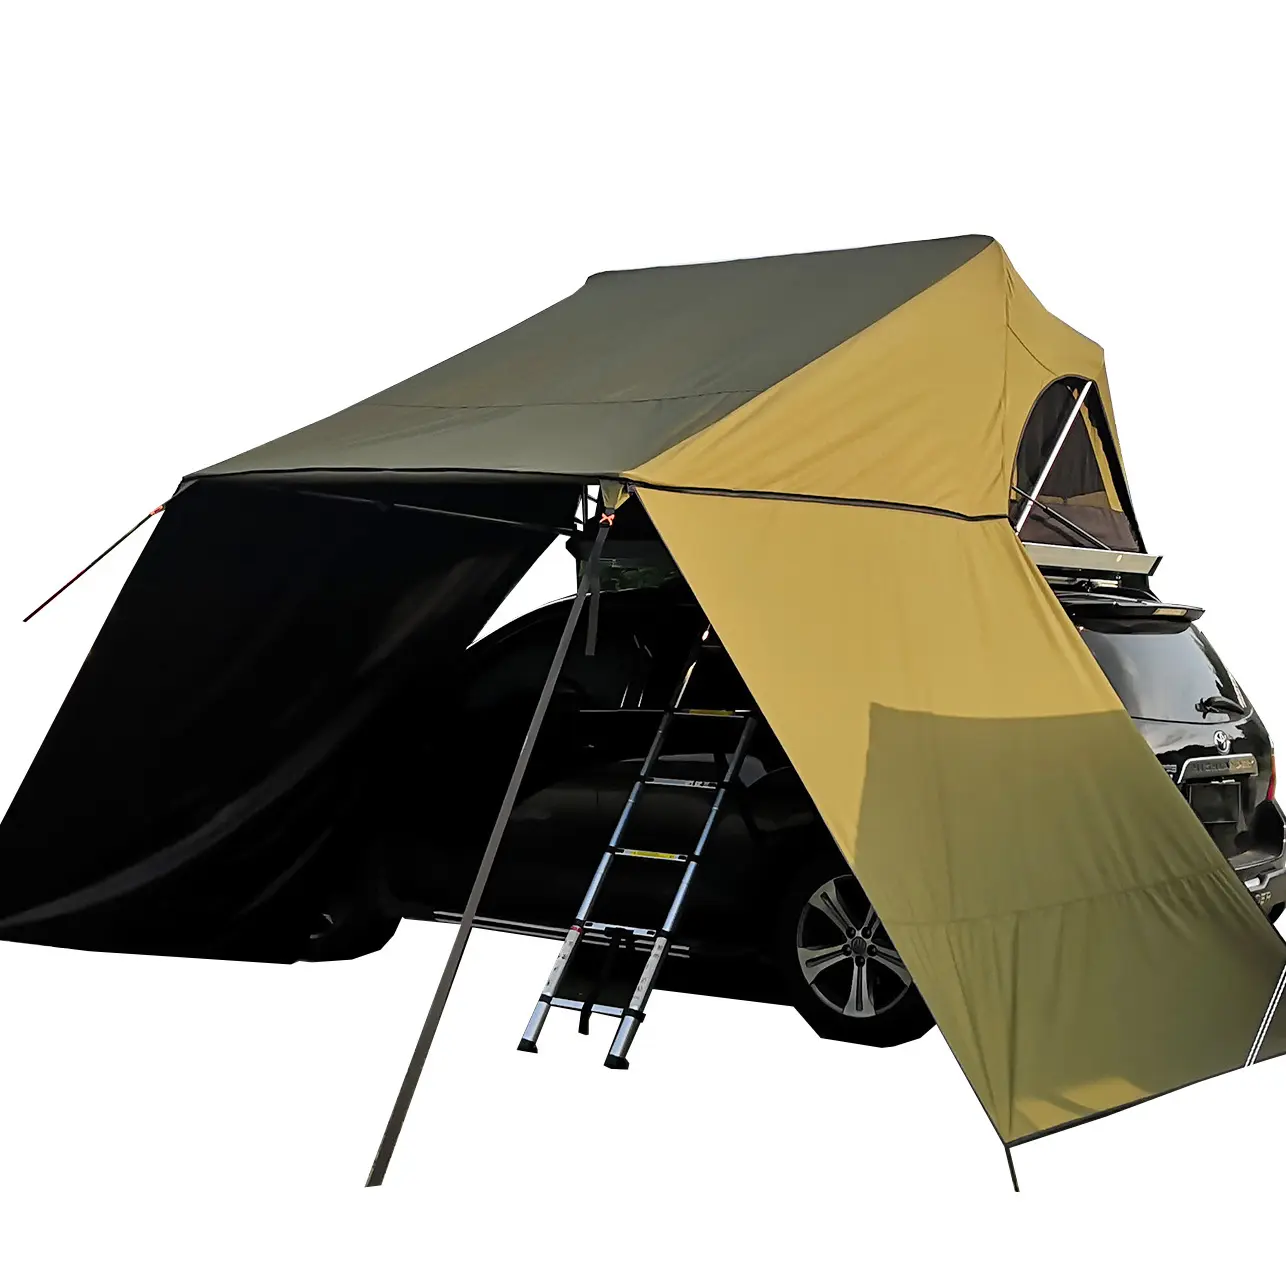 Carro telhado da barraca com mosca da chuva toldo toldo camping abrigo lona de acampamento ao ar livre à prova d' água